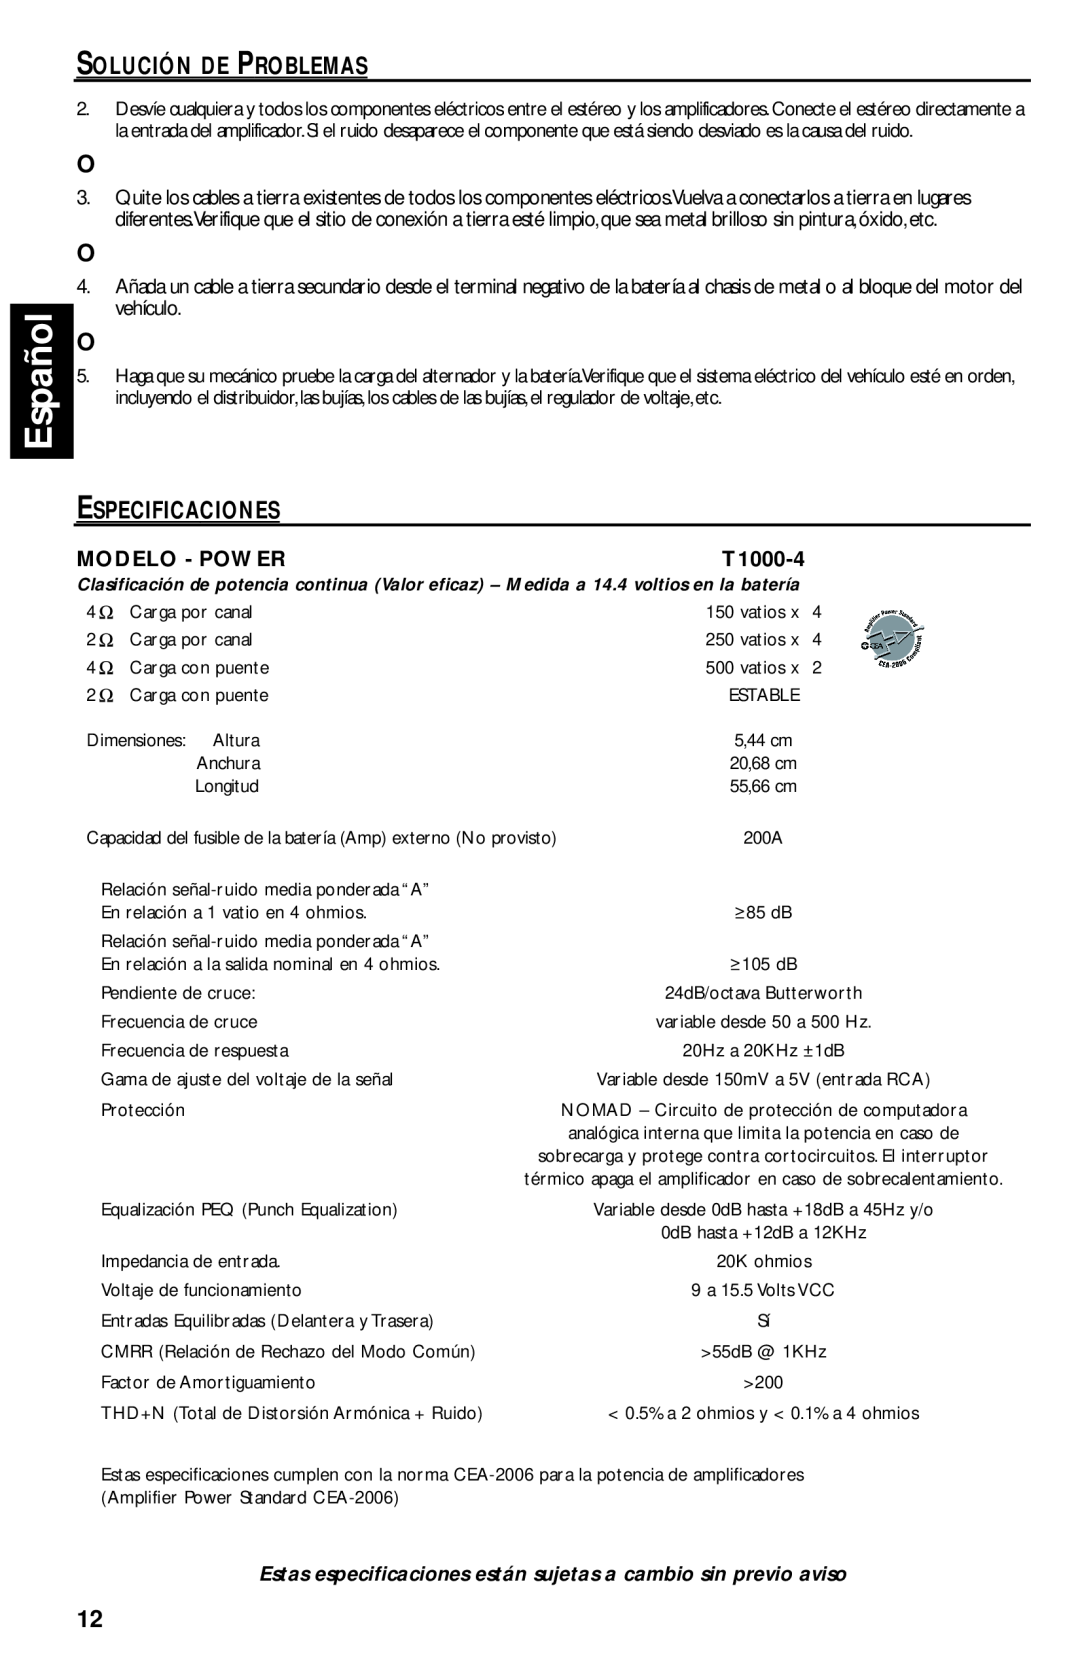 Rockford Fosgate T1000-4 manual Español, Solución De Problemas, Especificaciones, Modelo - Power 